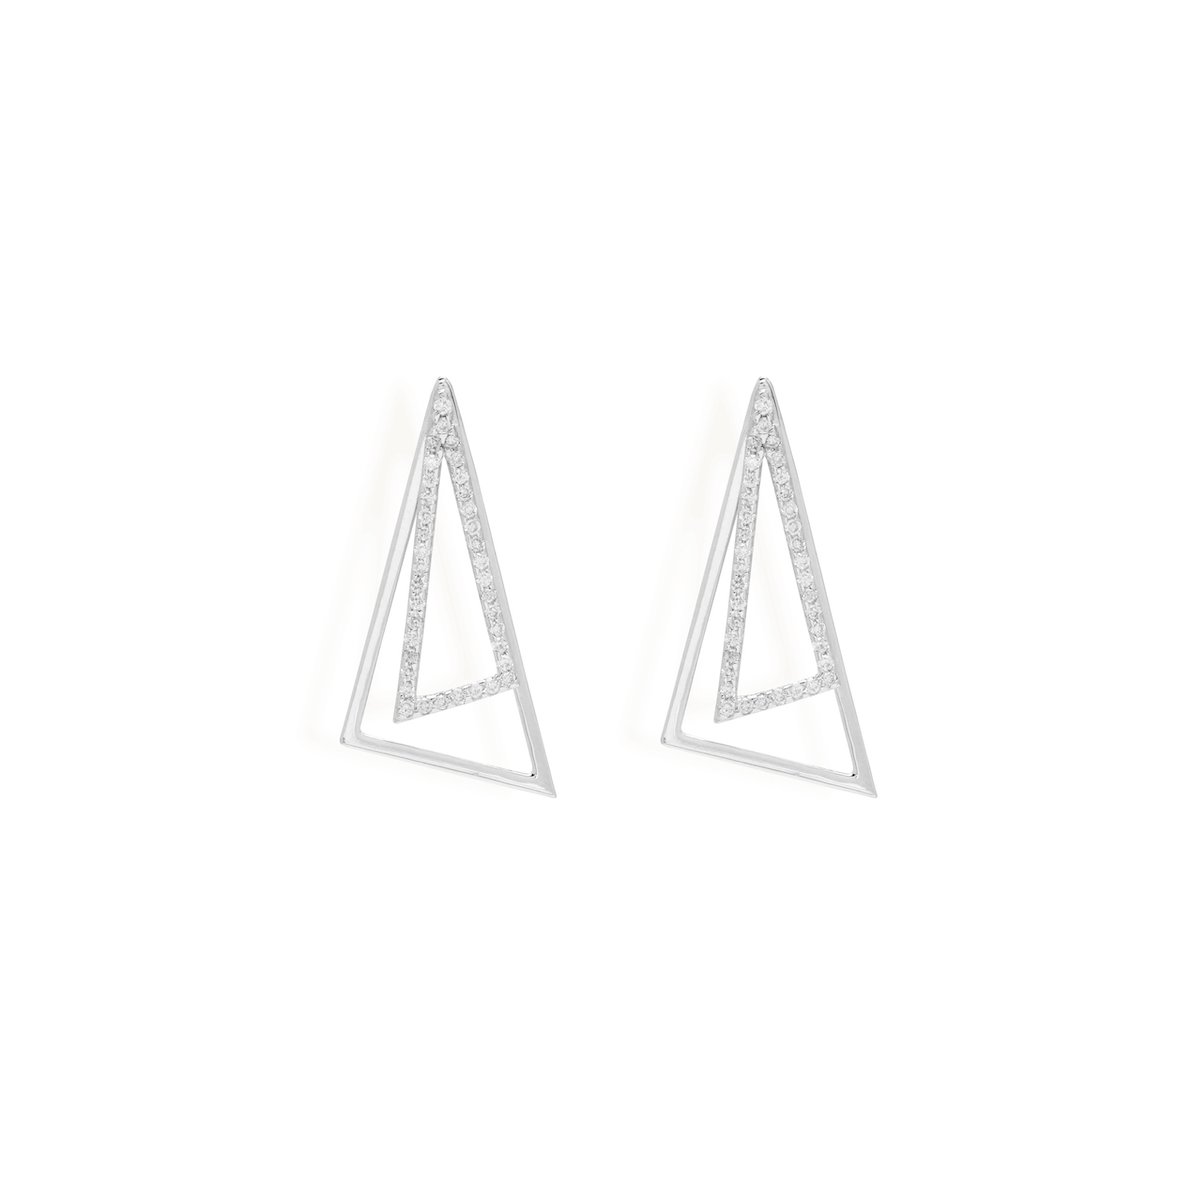 Studded Triangle Ear Jacket Earrings Starklejewels White 14K 